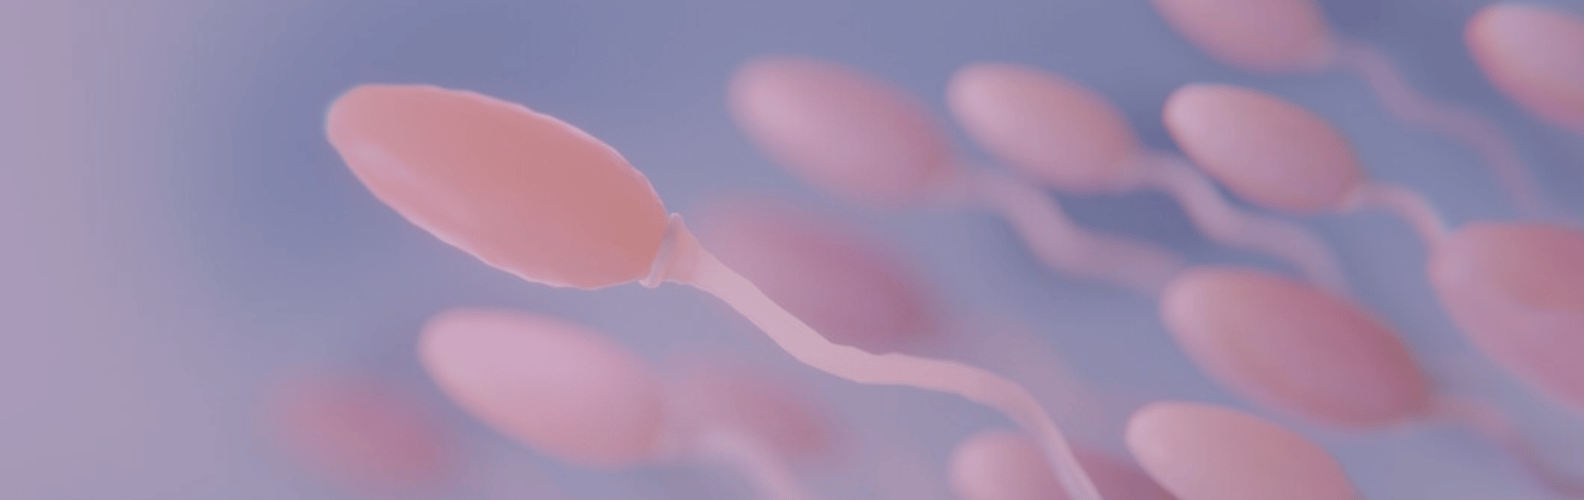 Pruebas diagnósticas de fertilidad para Hombre-Seminograma